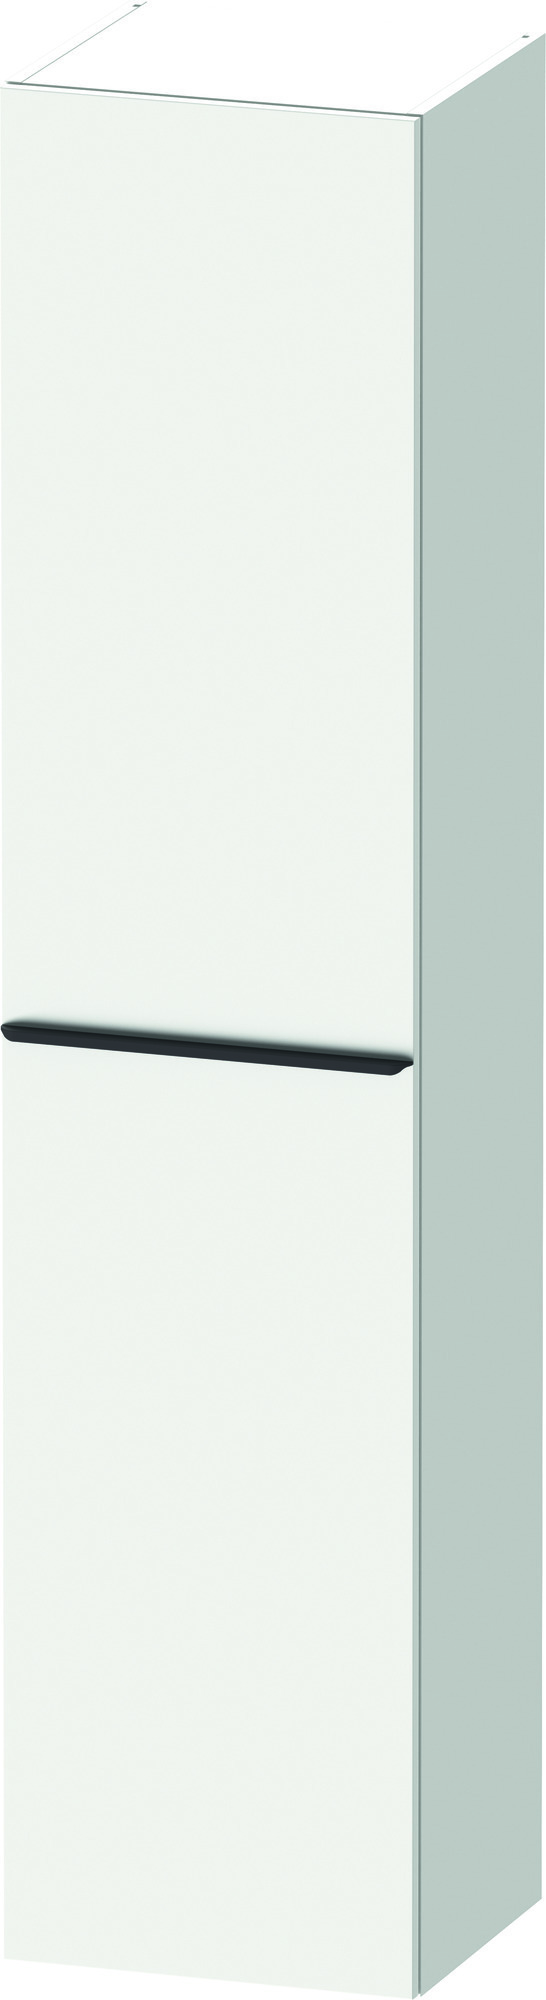 Productafbeelding van Duravit D-Neo hoge kast linksdraaiend 40 x 36 x 176 cm, wit mat